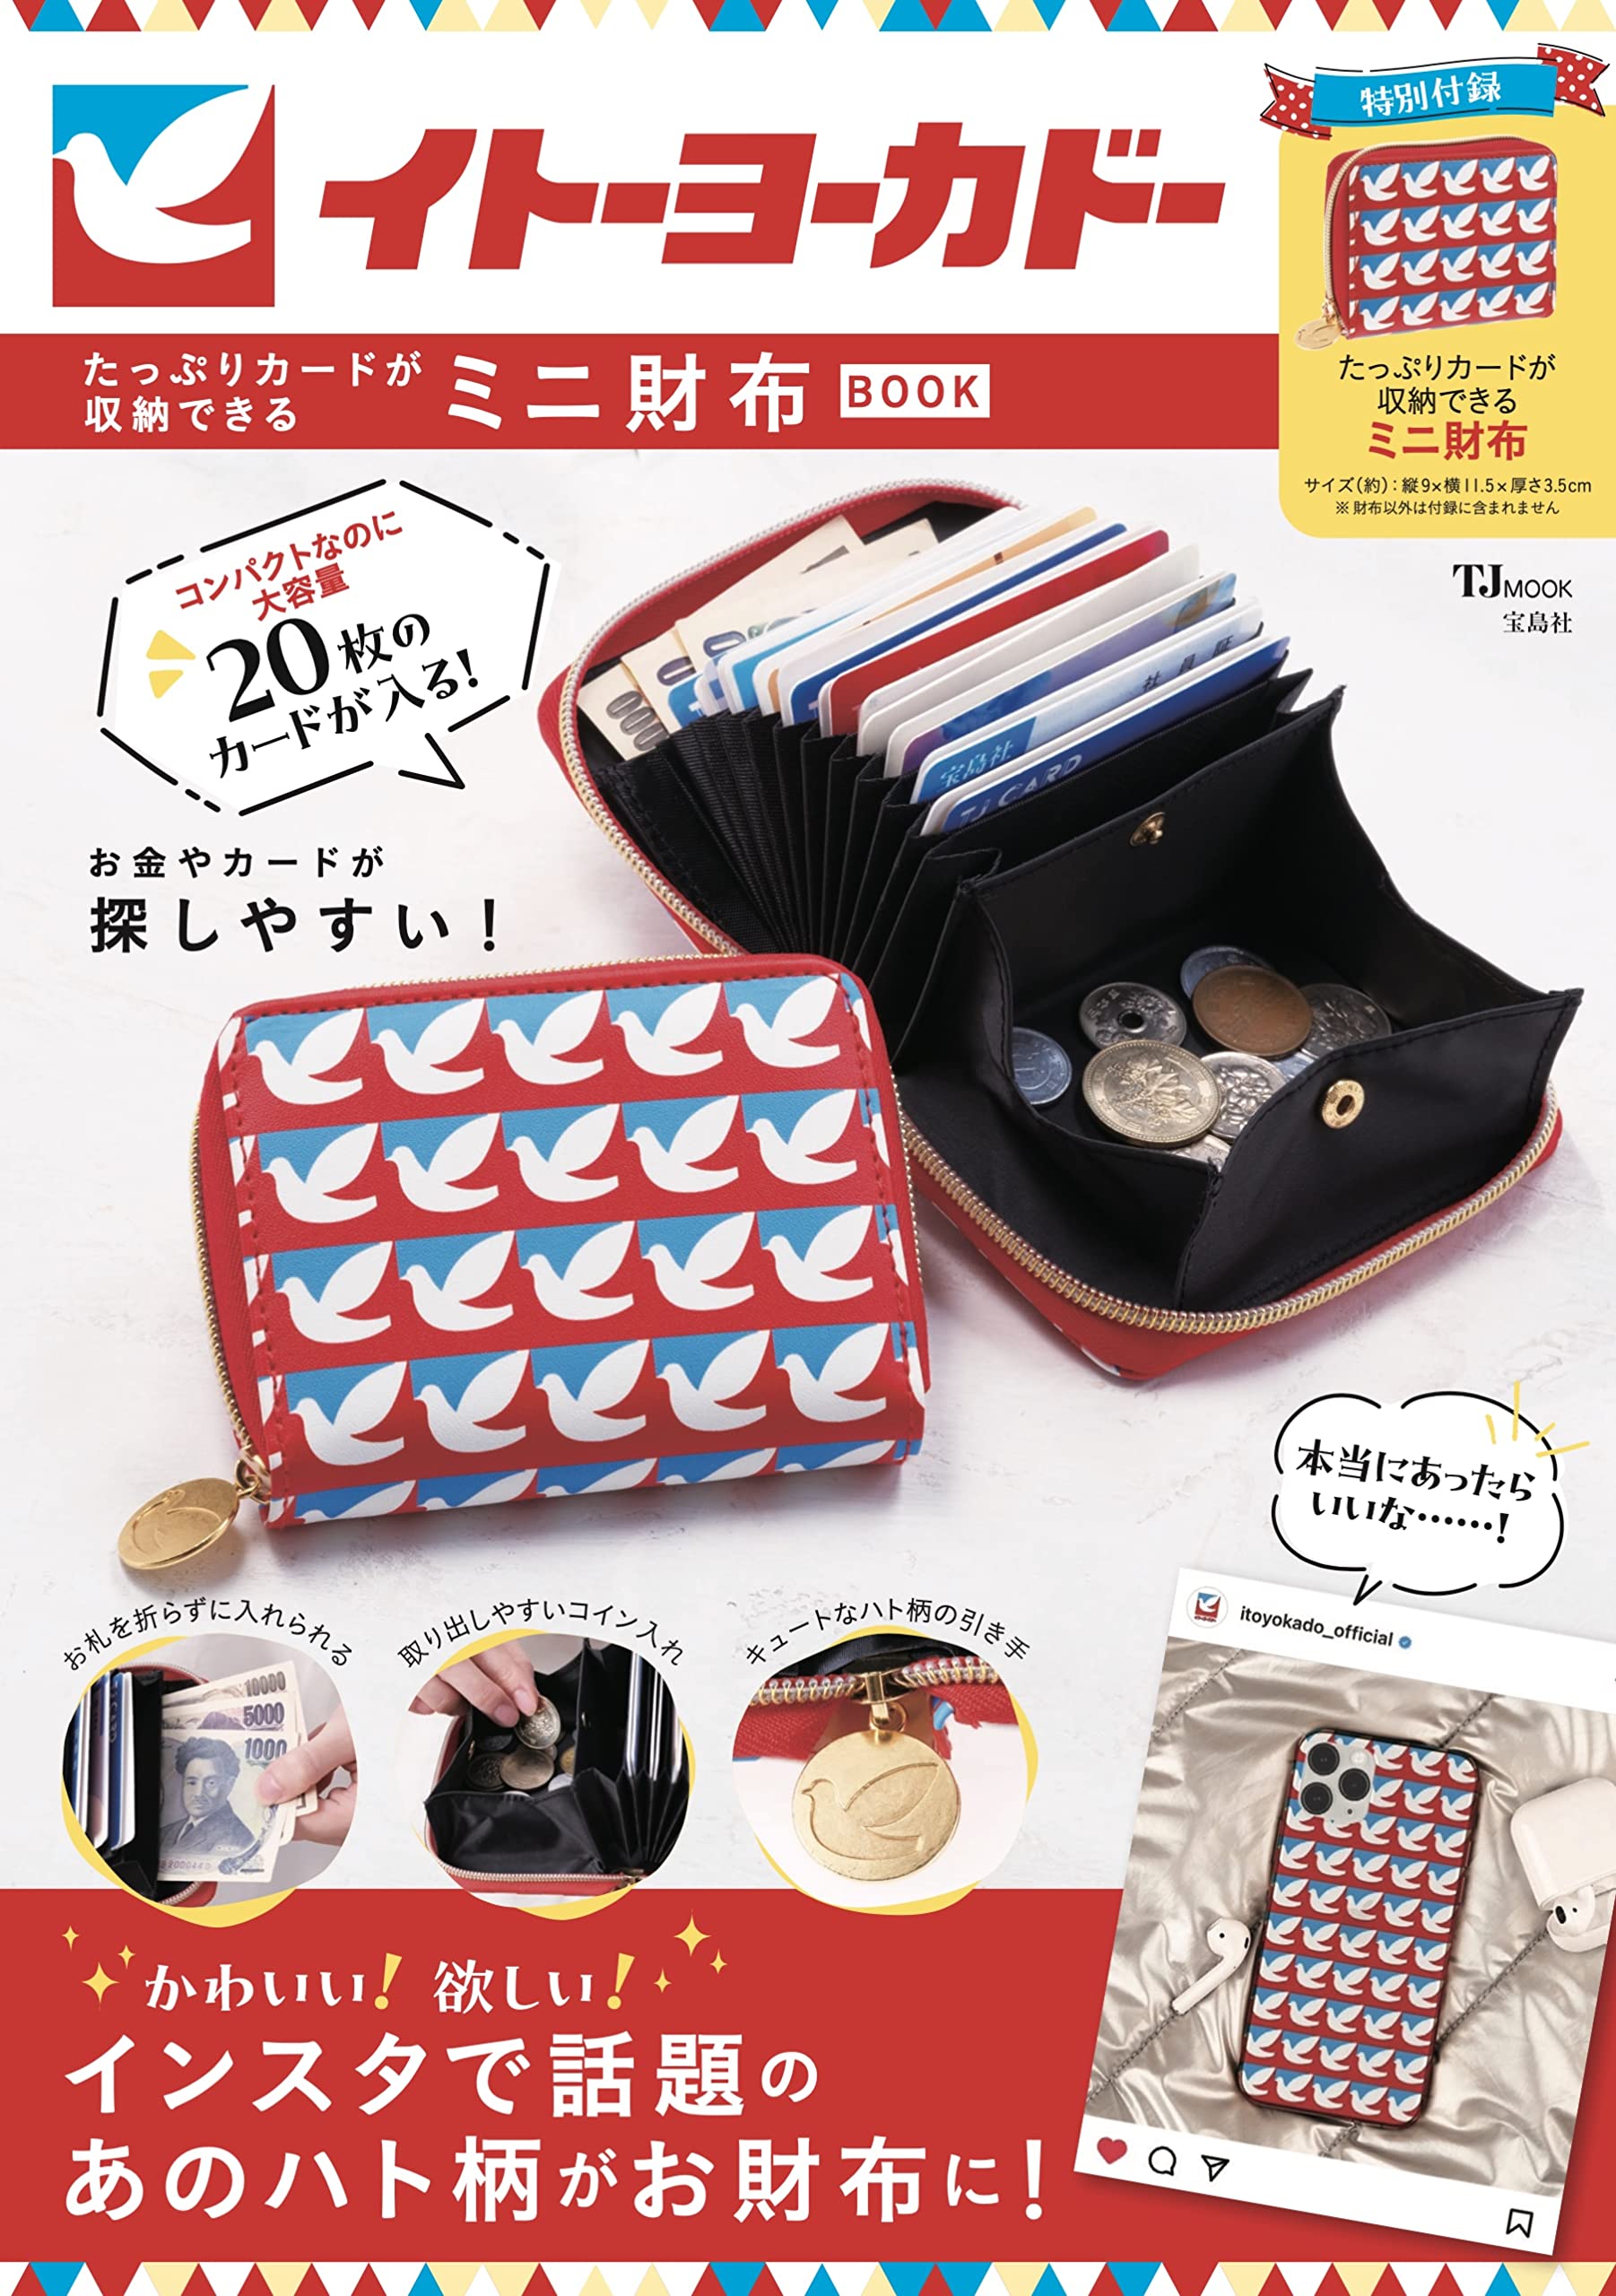 イト-ヨ-カド- たっぷりカ-ドが收納できるミニ財布BOOK